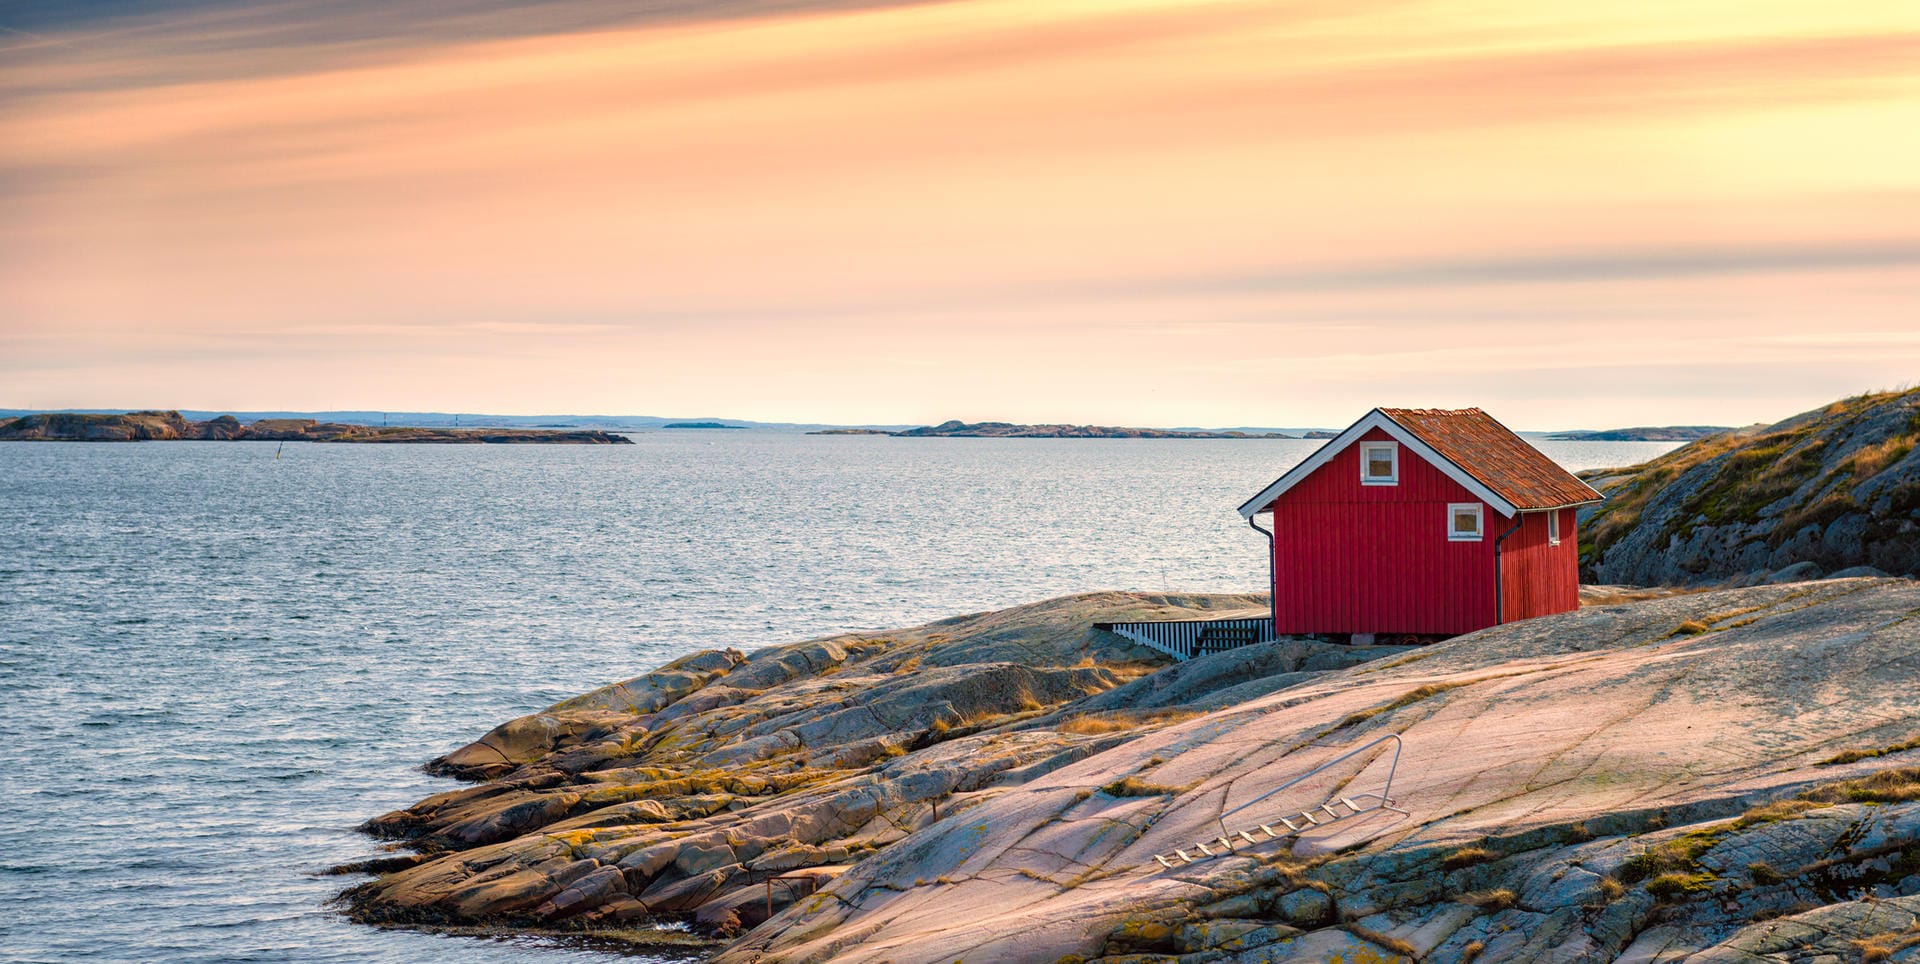 Hütte am Strand in Schweden: Obwohl der Euro im Vergleich zur Schwedischen Krone an Wert gewonnen hat, bleibt ein Urlaub in Schweden teuer.